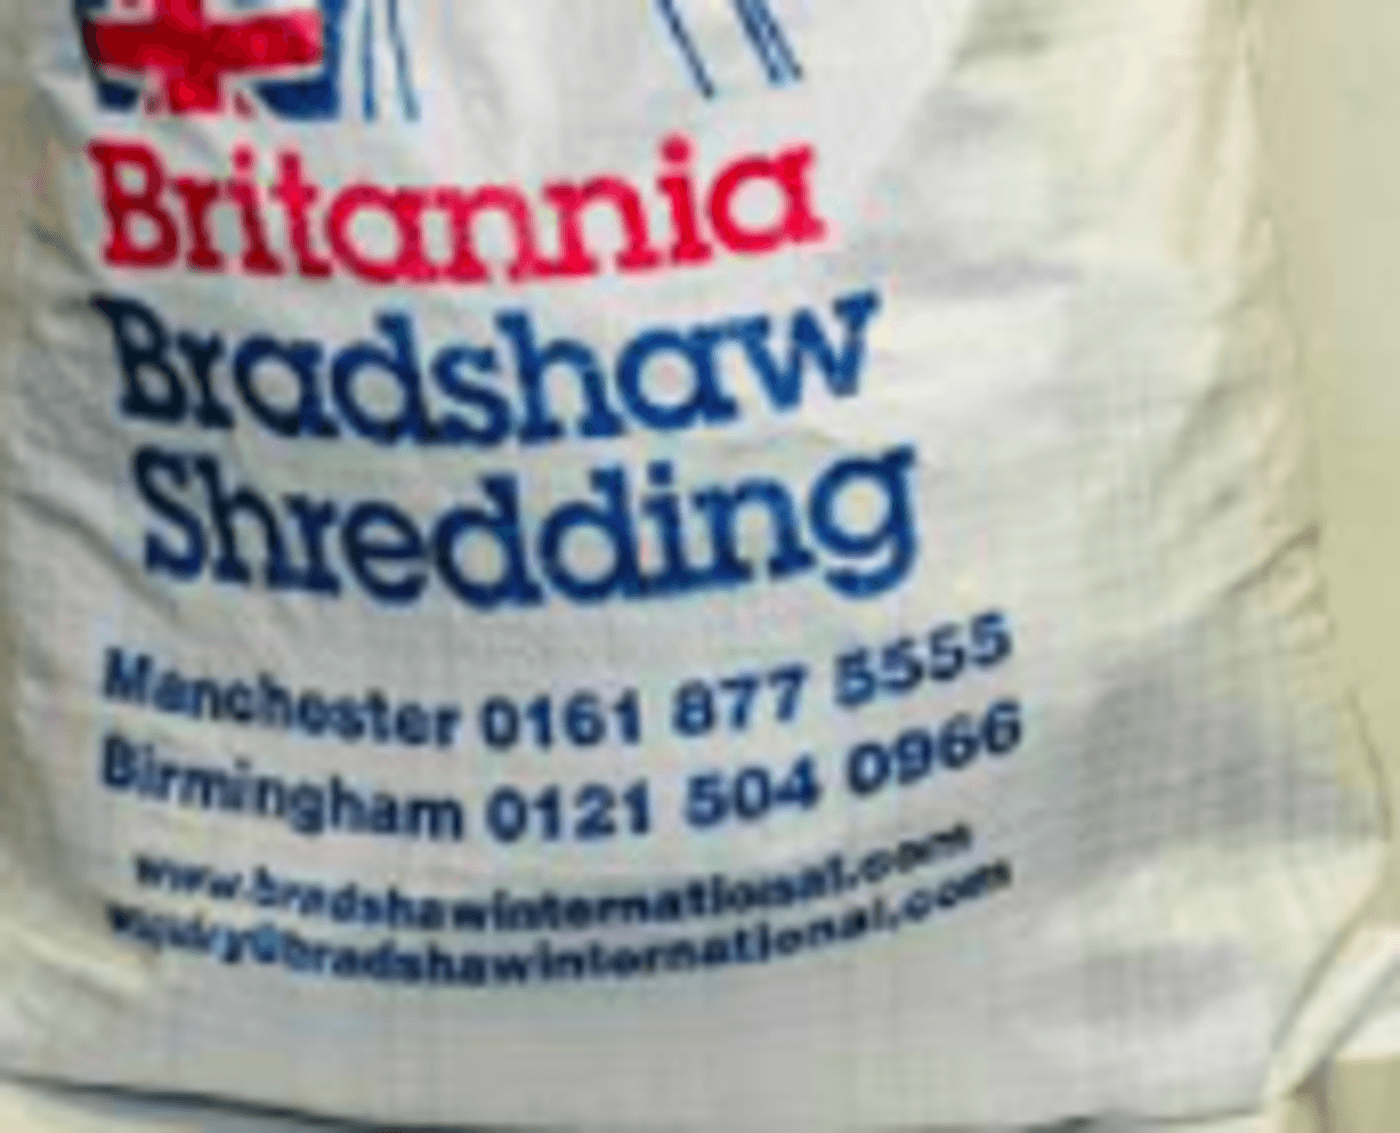 Move and Shred Britannia Bradshaws